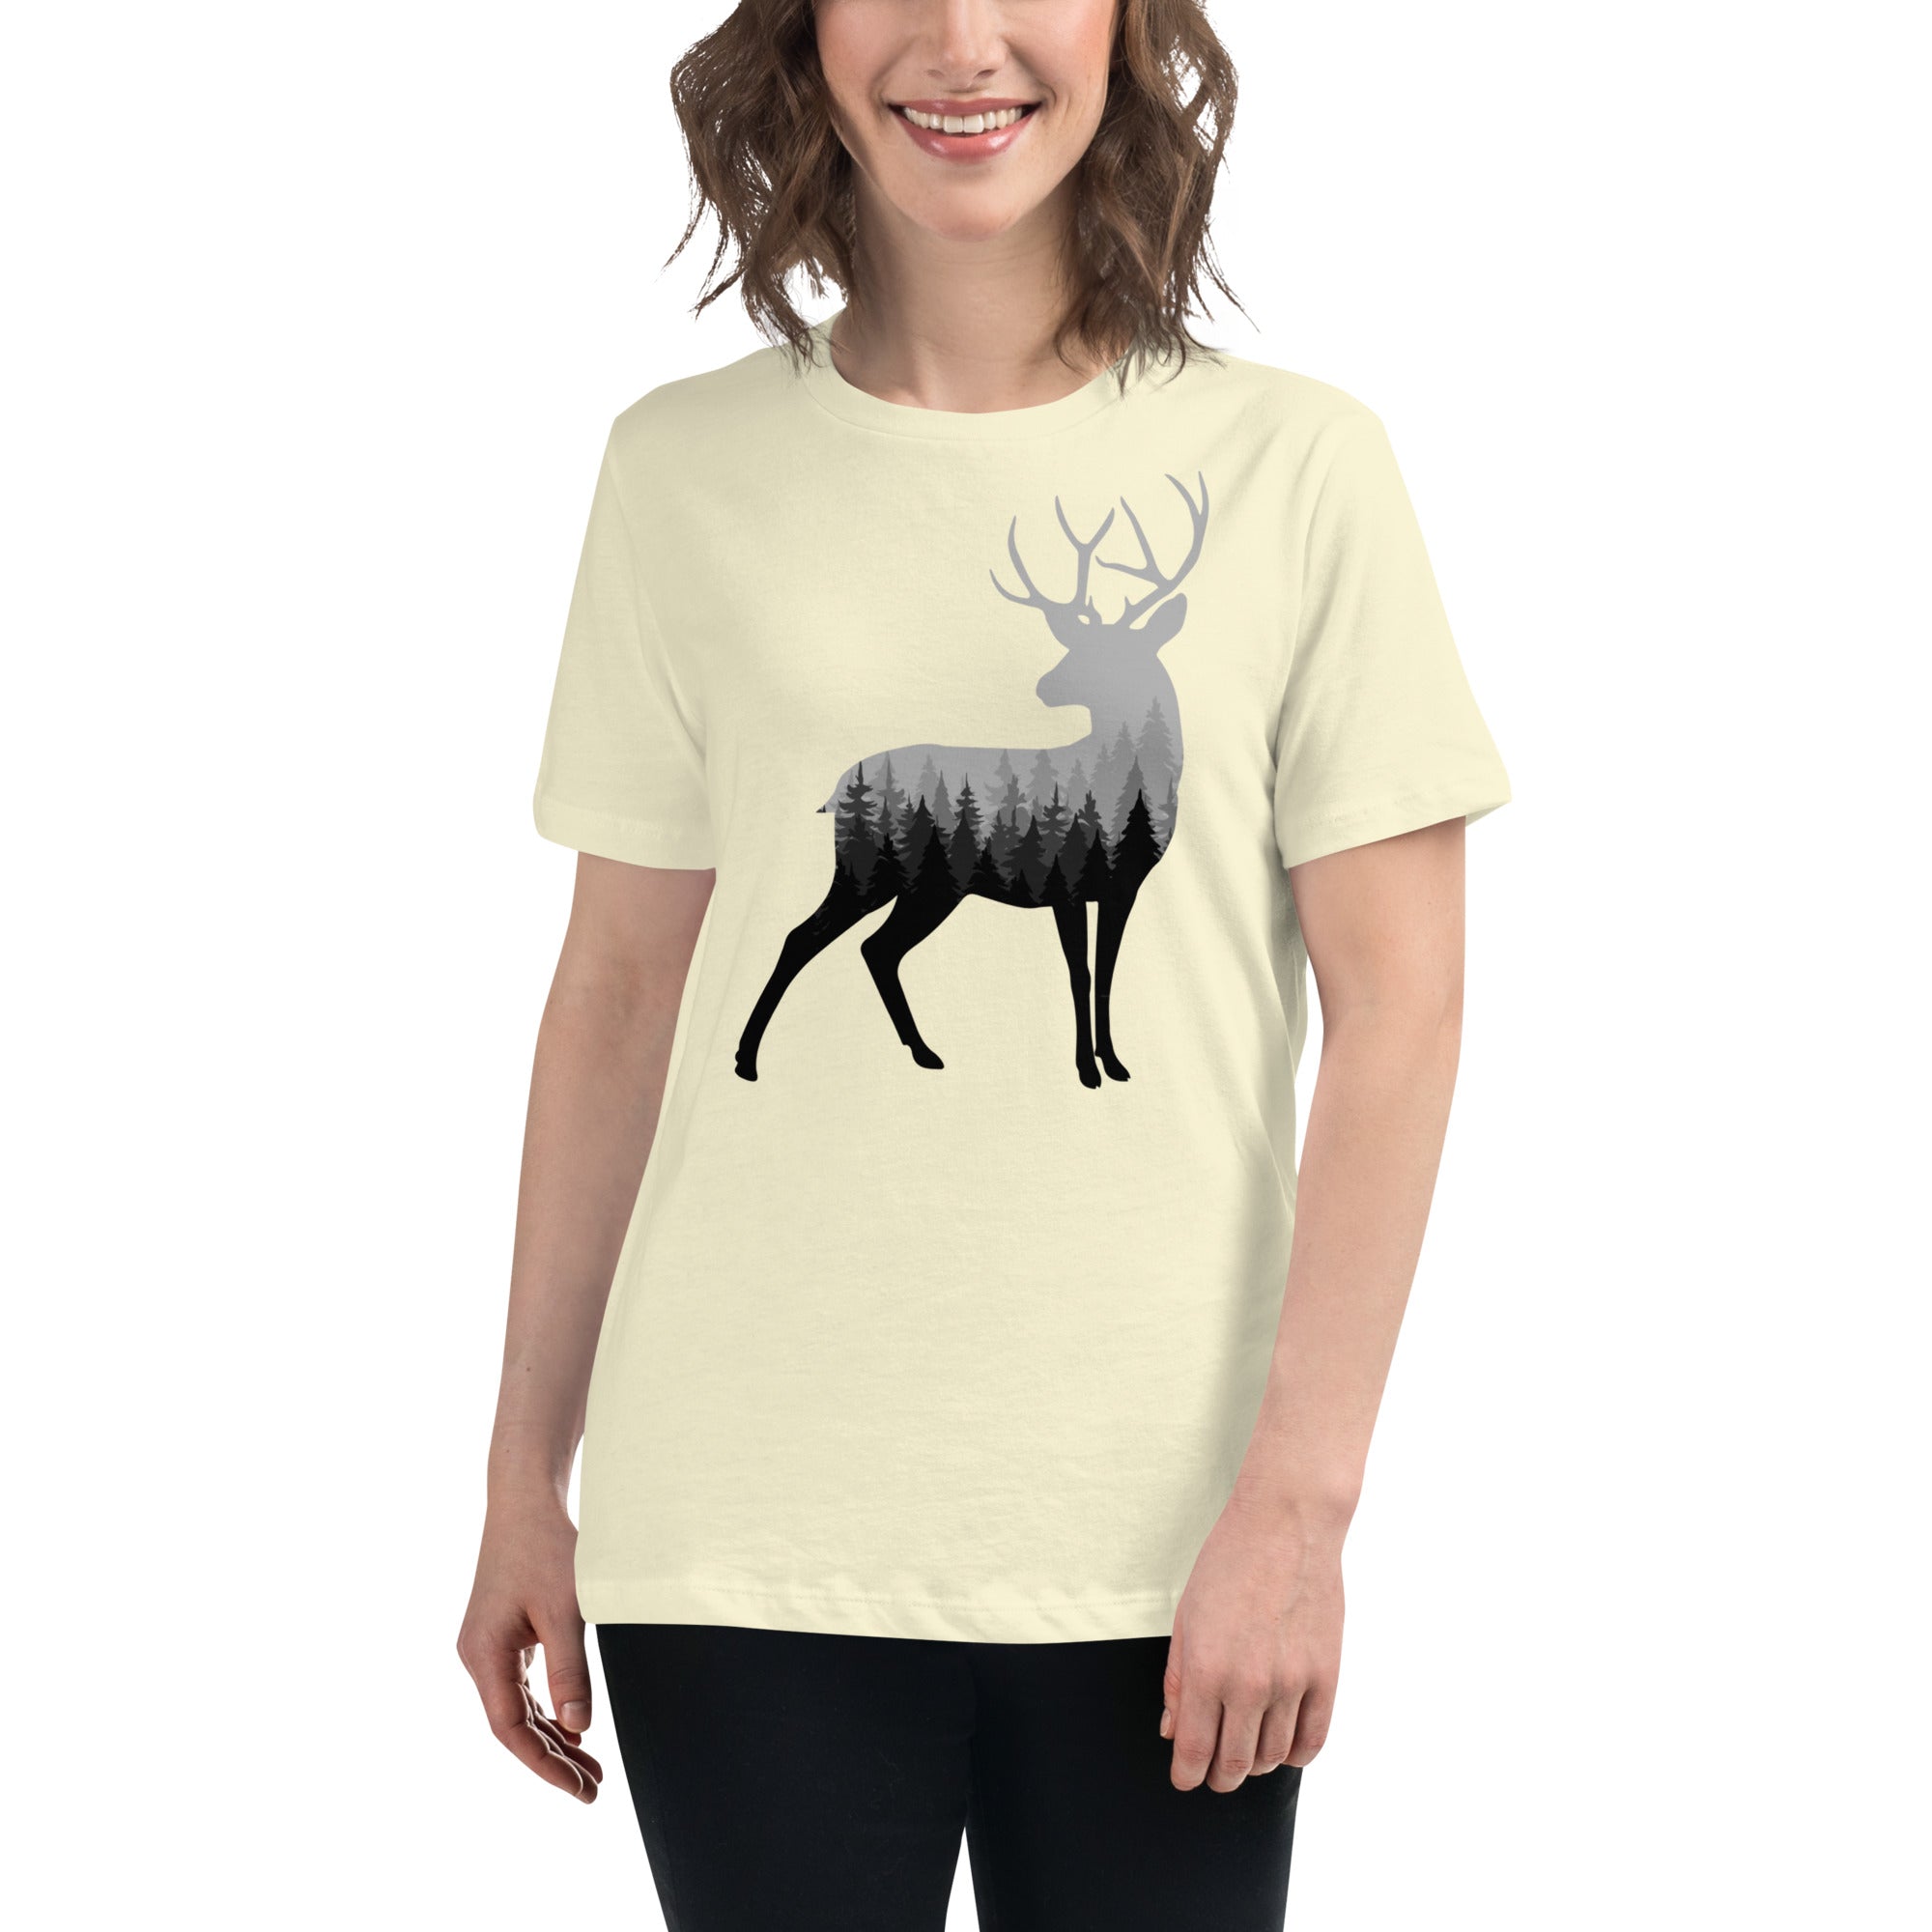 Buck n' Trees Women's Premium T-Shirt